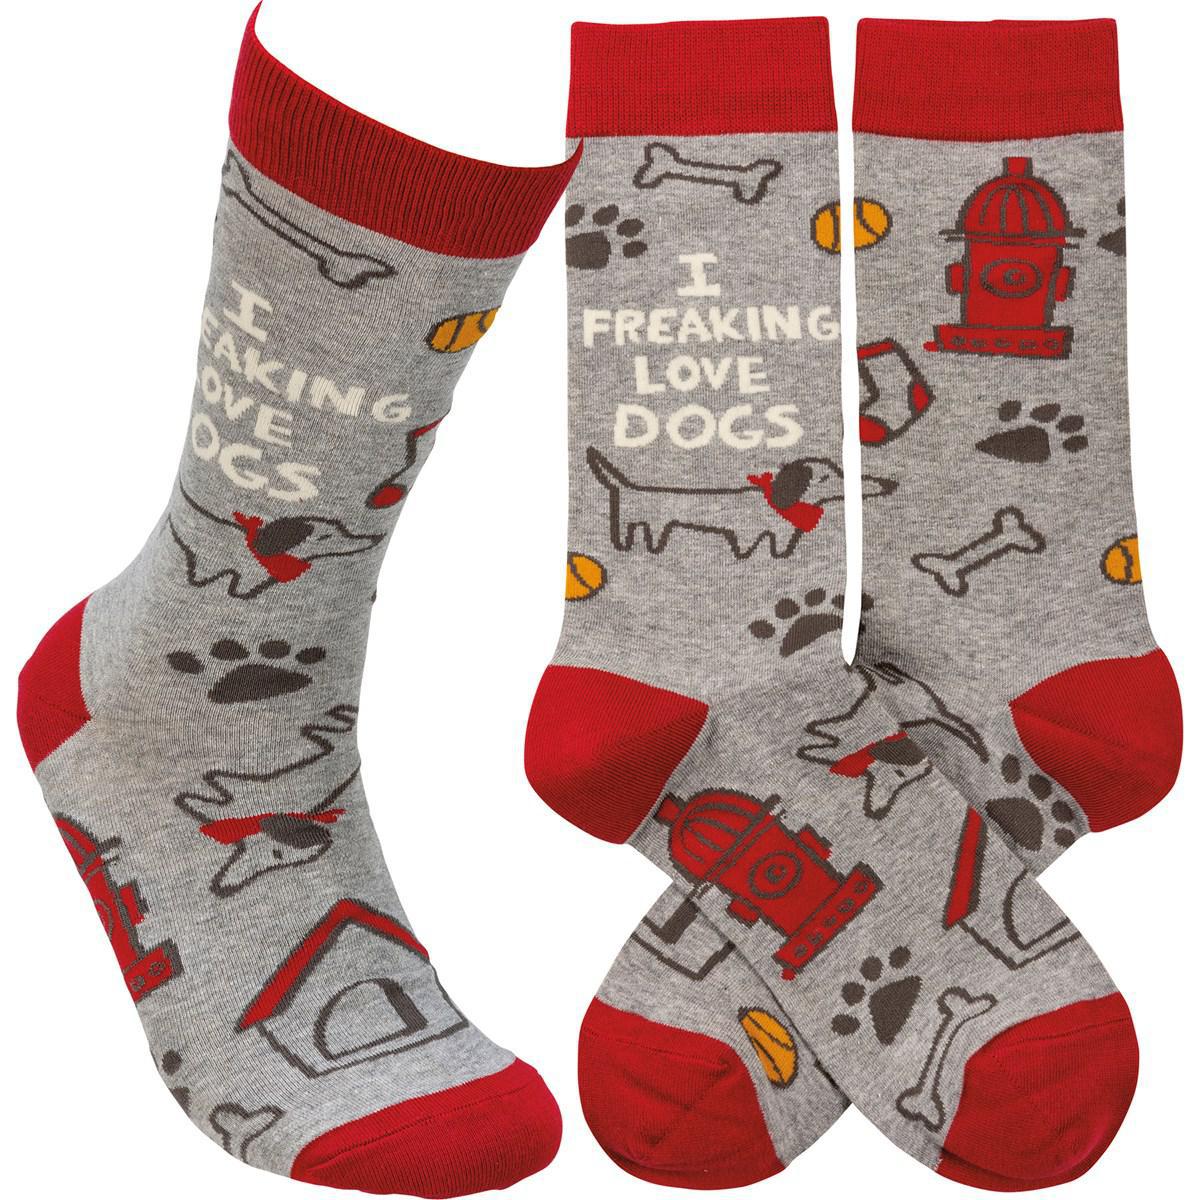 I Freaking Love Dogs Socks